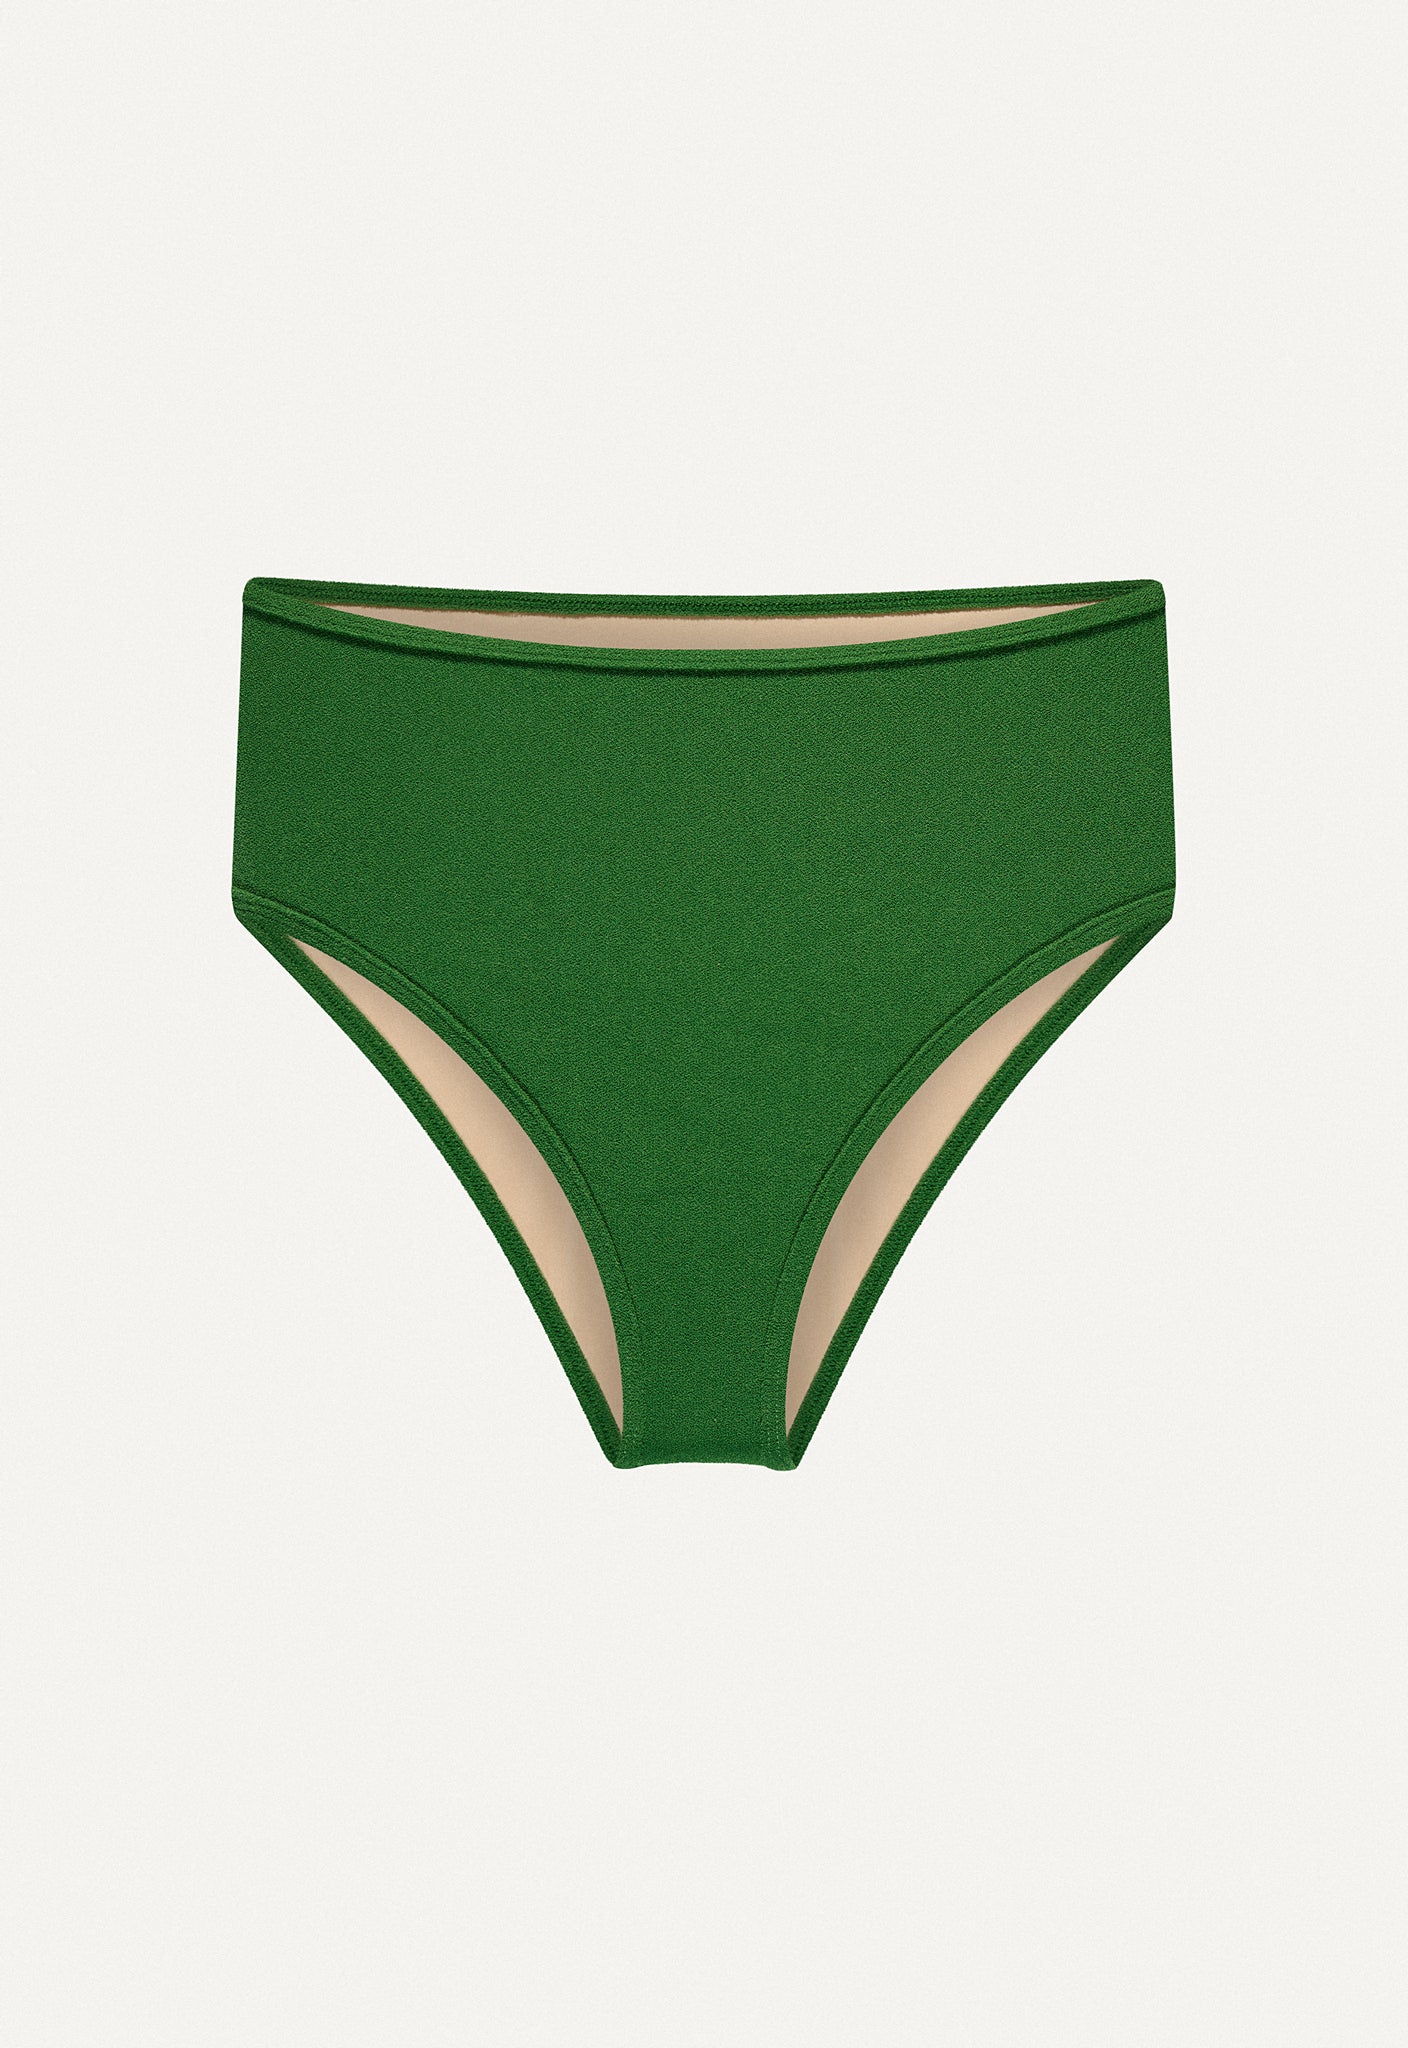 Bikini Bottom "Samun" in dark green terry